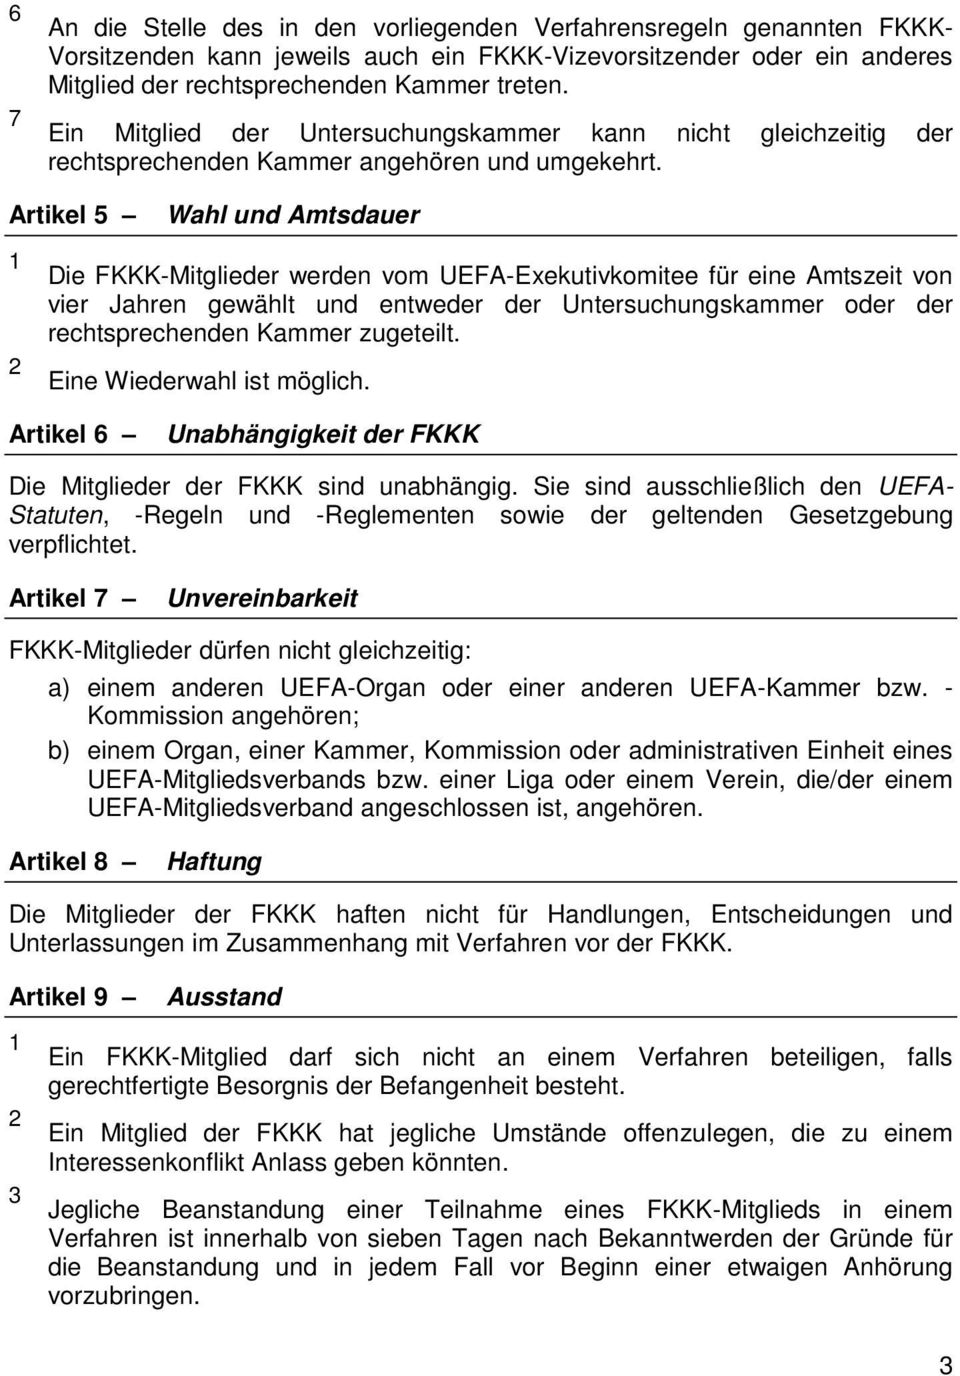 Artikel 5 Wahl und Amtsdauer Die FKKK-Mitglieder werden vom UEFA-Exekutivkomitee für eine Amtszeit von vier Jahren gewählt und entweder der Untersuchungskammer oder der rechtsprechenden Kammer